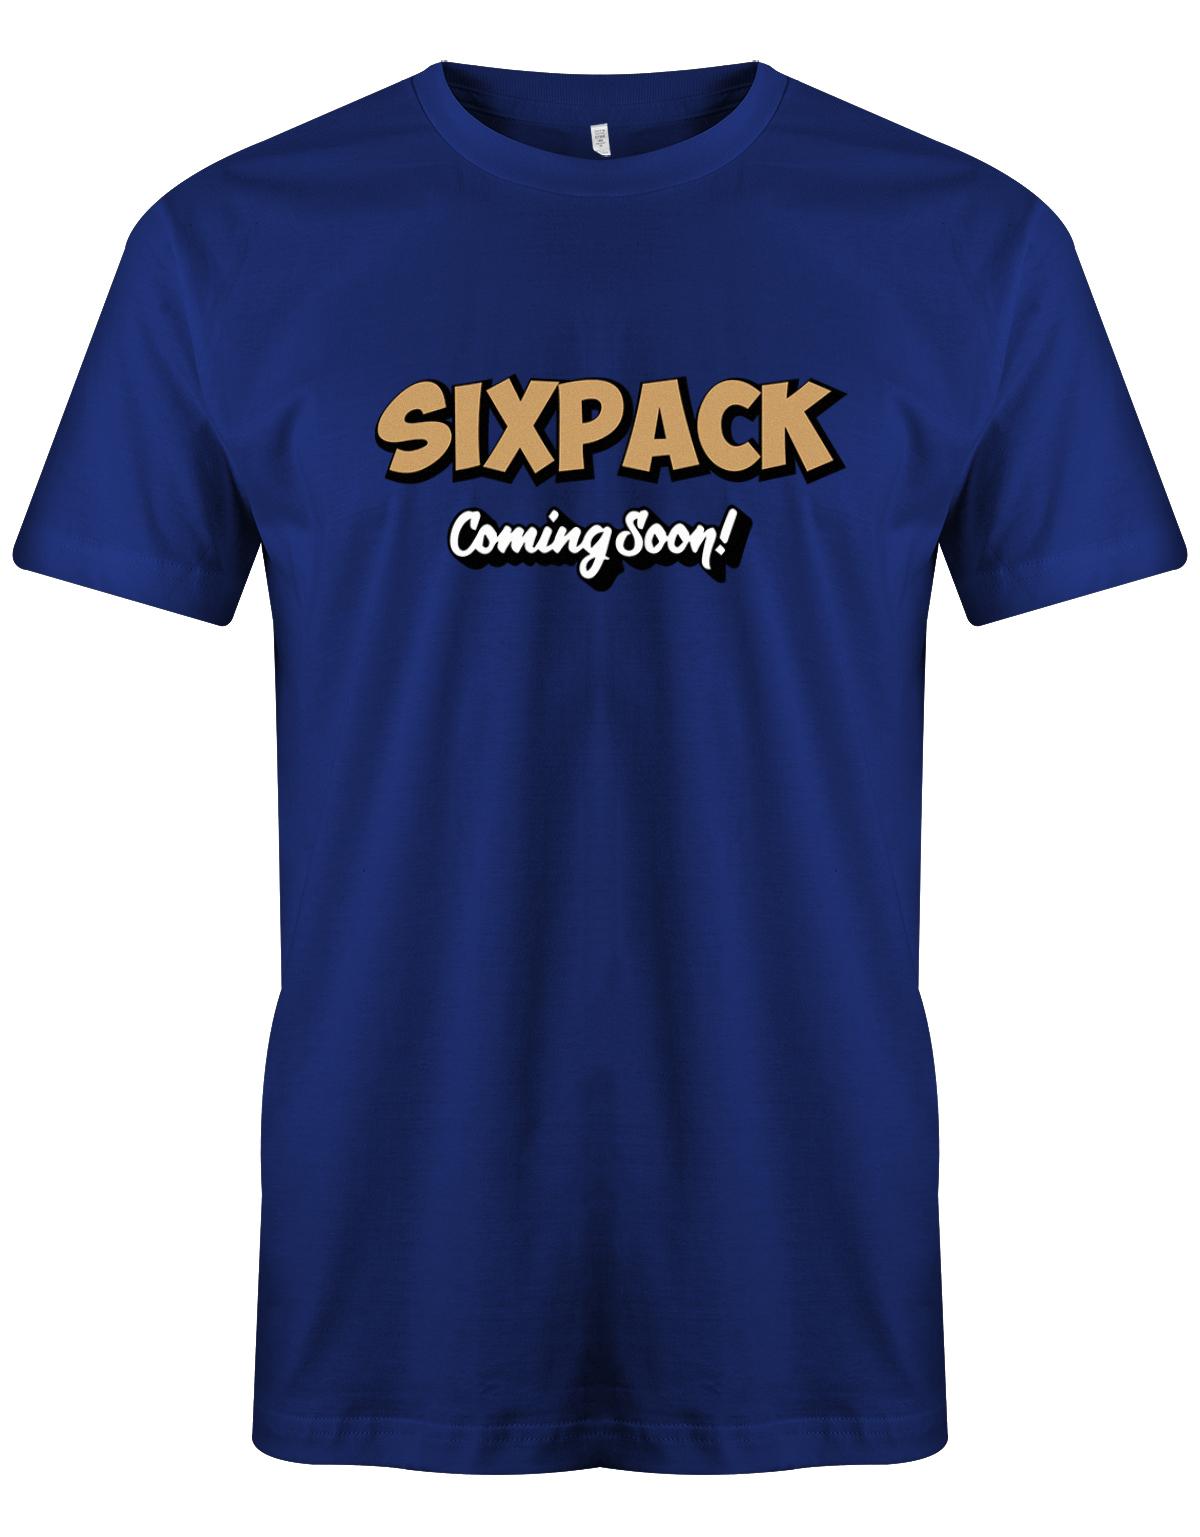 Sixpack-coming-soon-Herren-Shirt-Royalblau